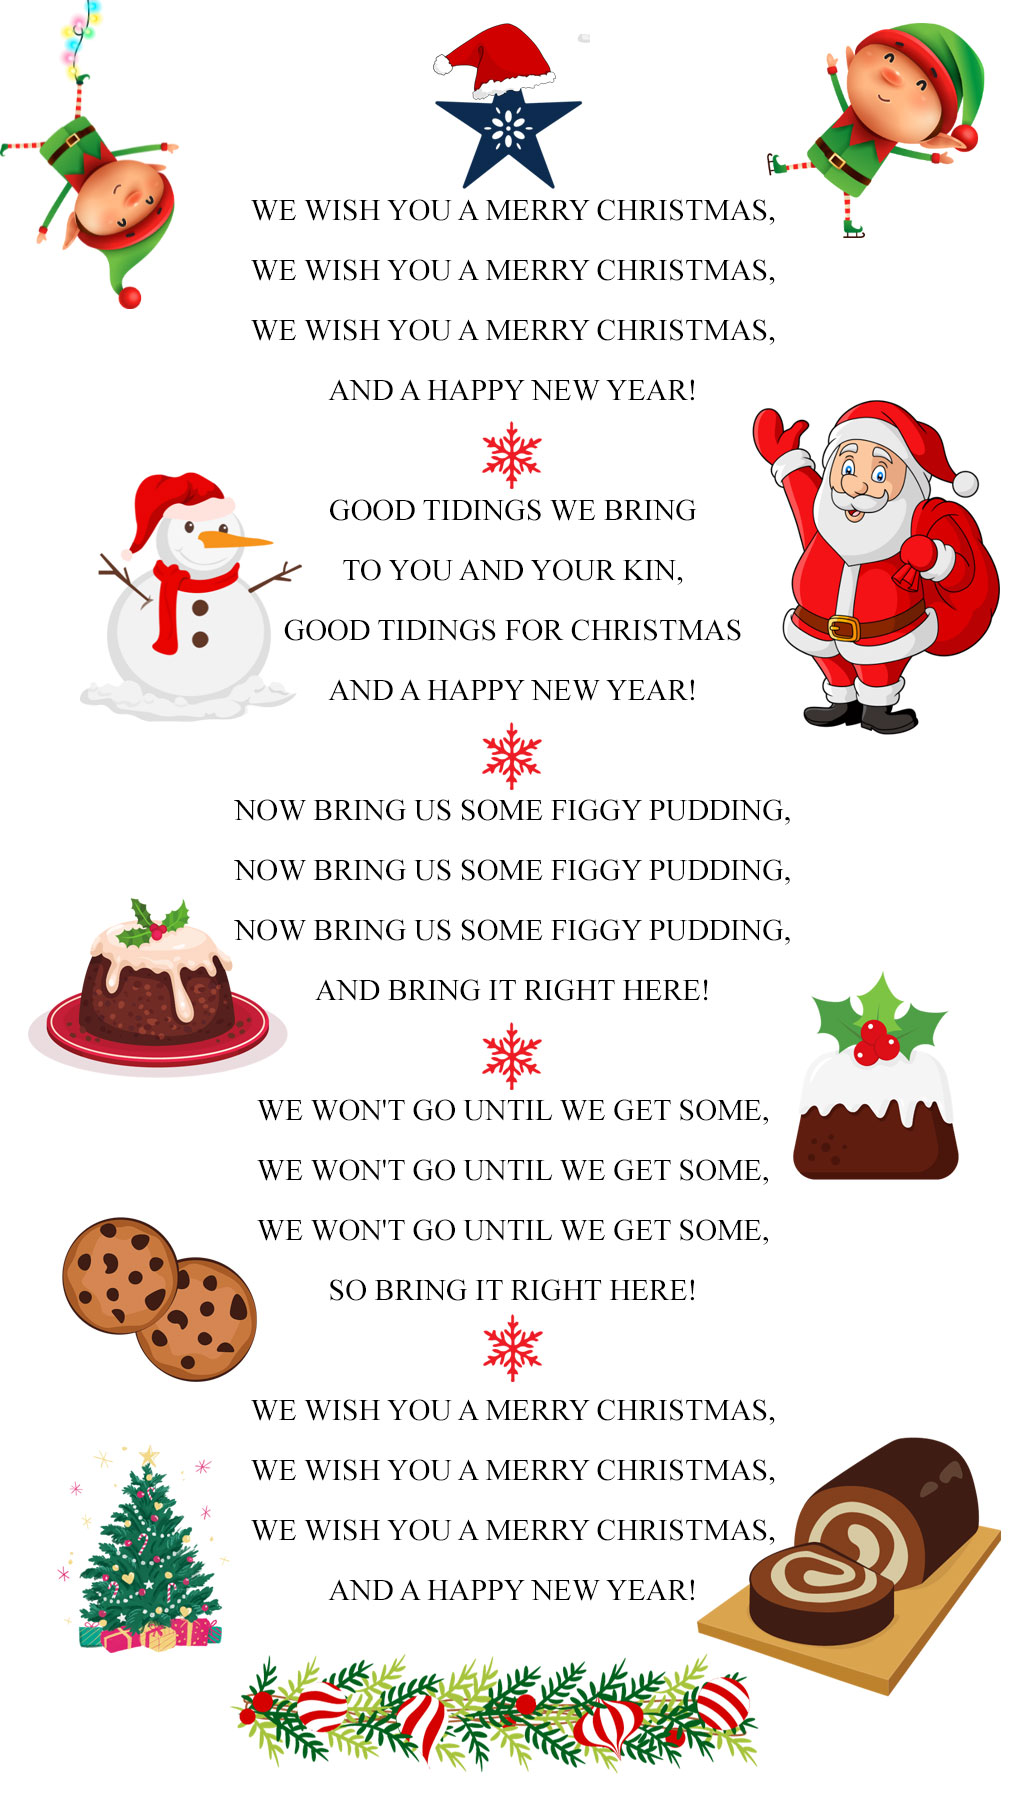 Traditional Christmas Carol Song We Wish You a Merry Christmas with Lyrics